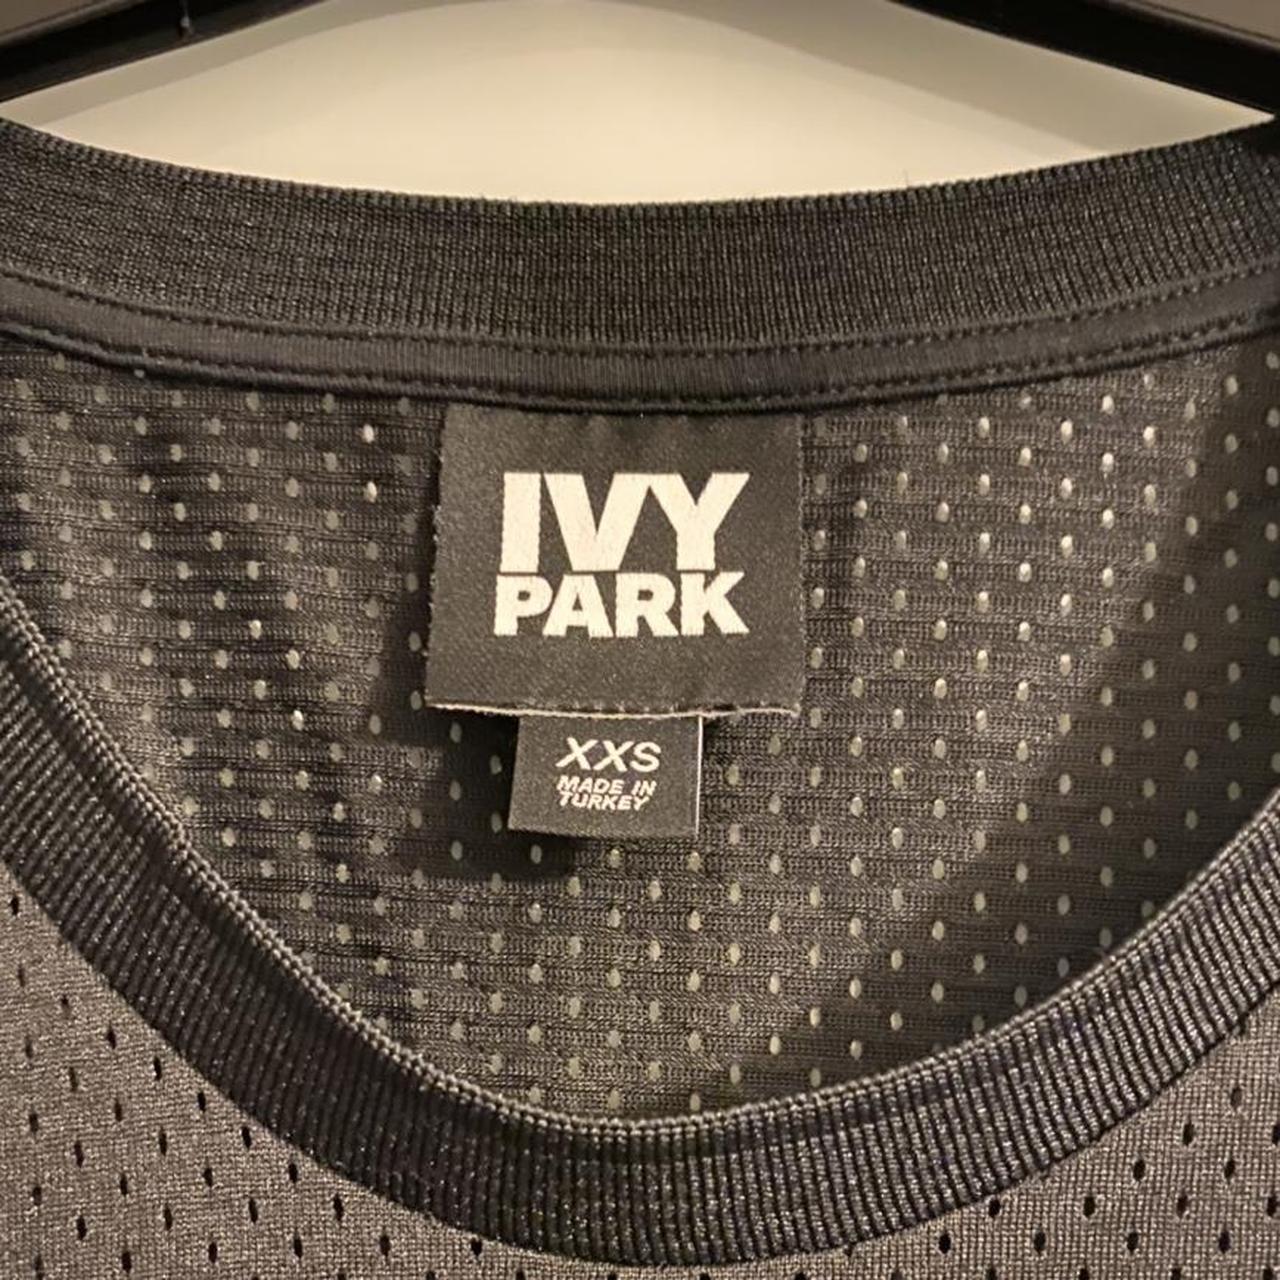 Ivy Park Women's Black Vests-tanks-camis | Depop